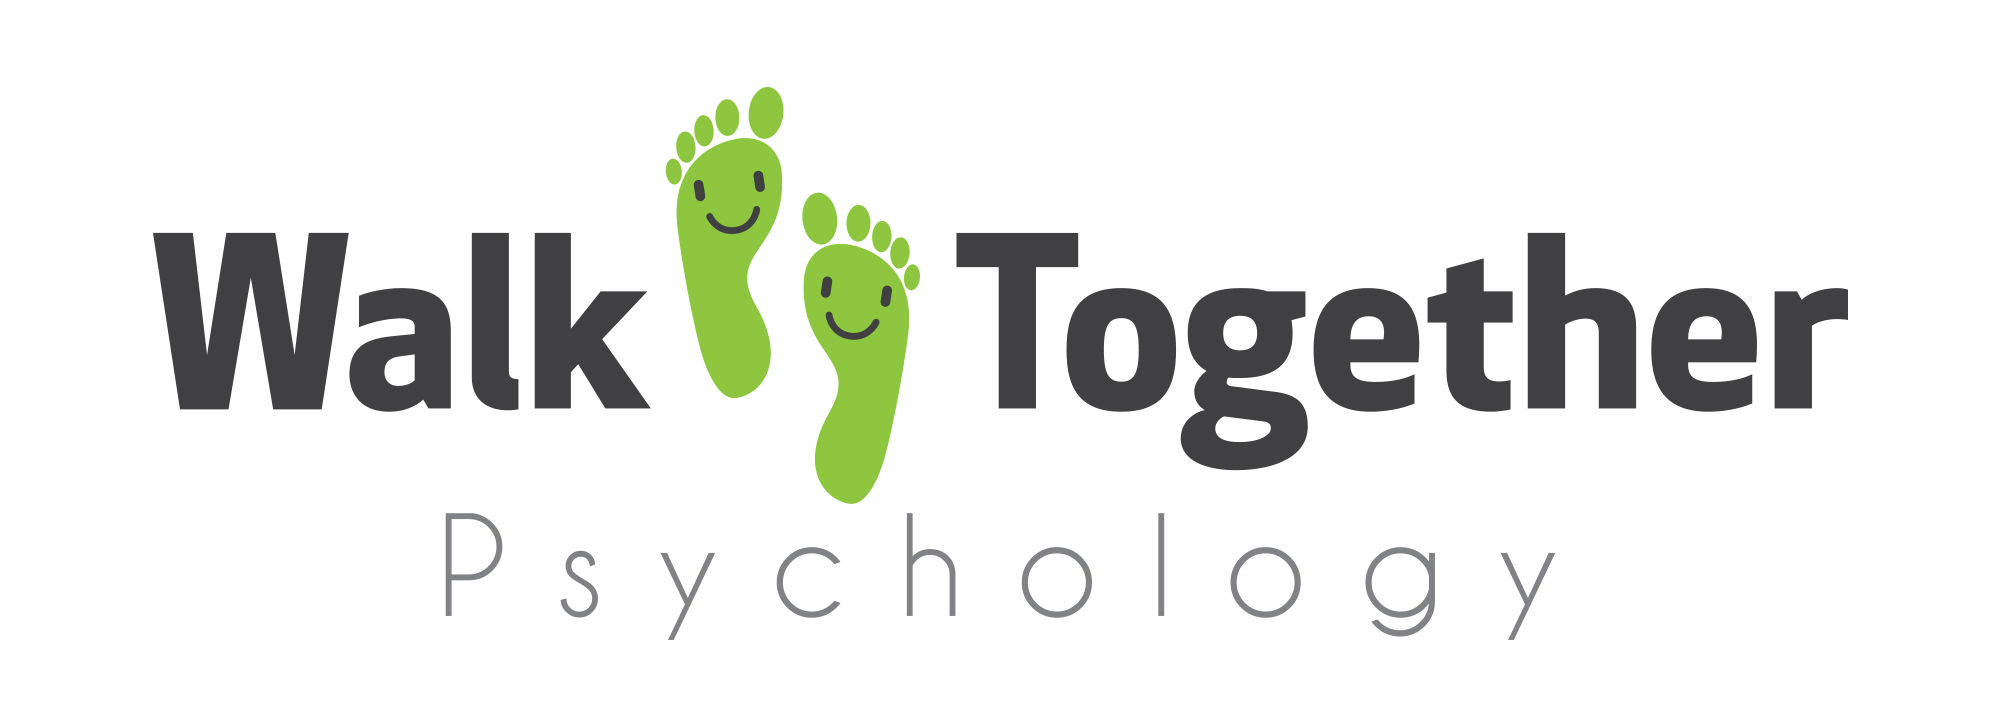 Walk Together Psychology